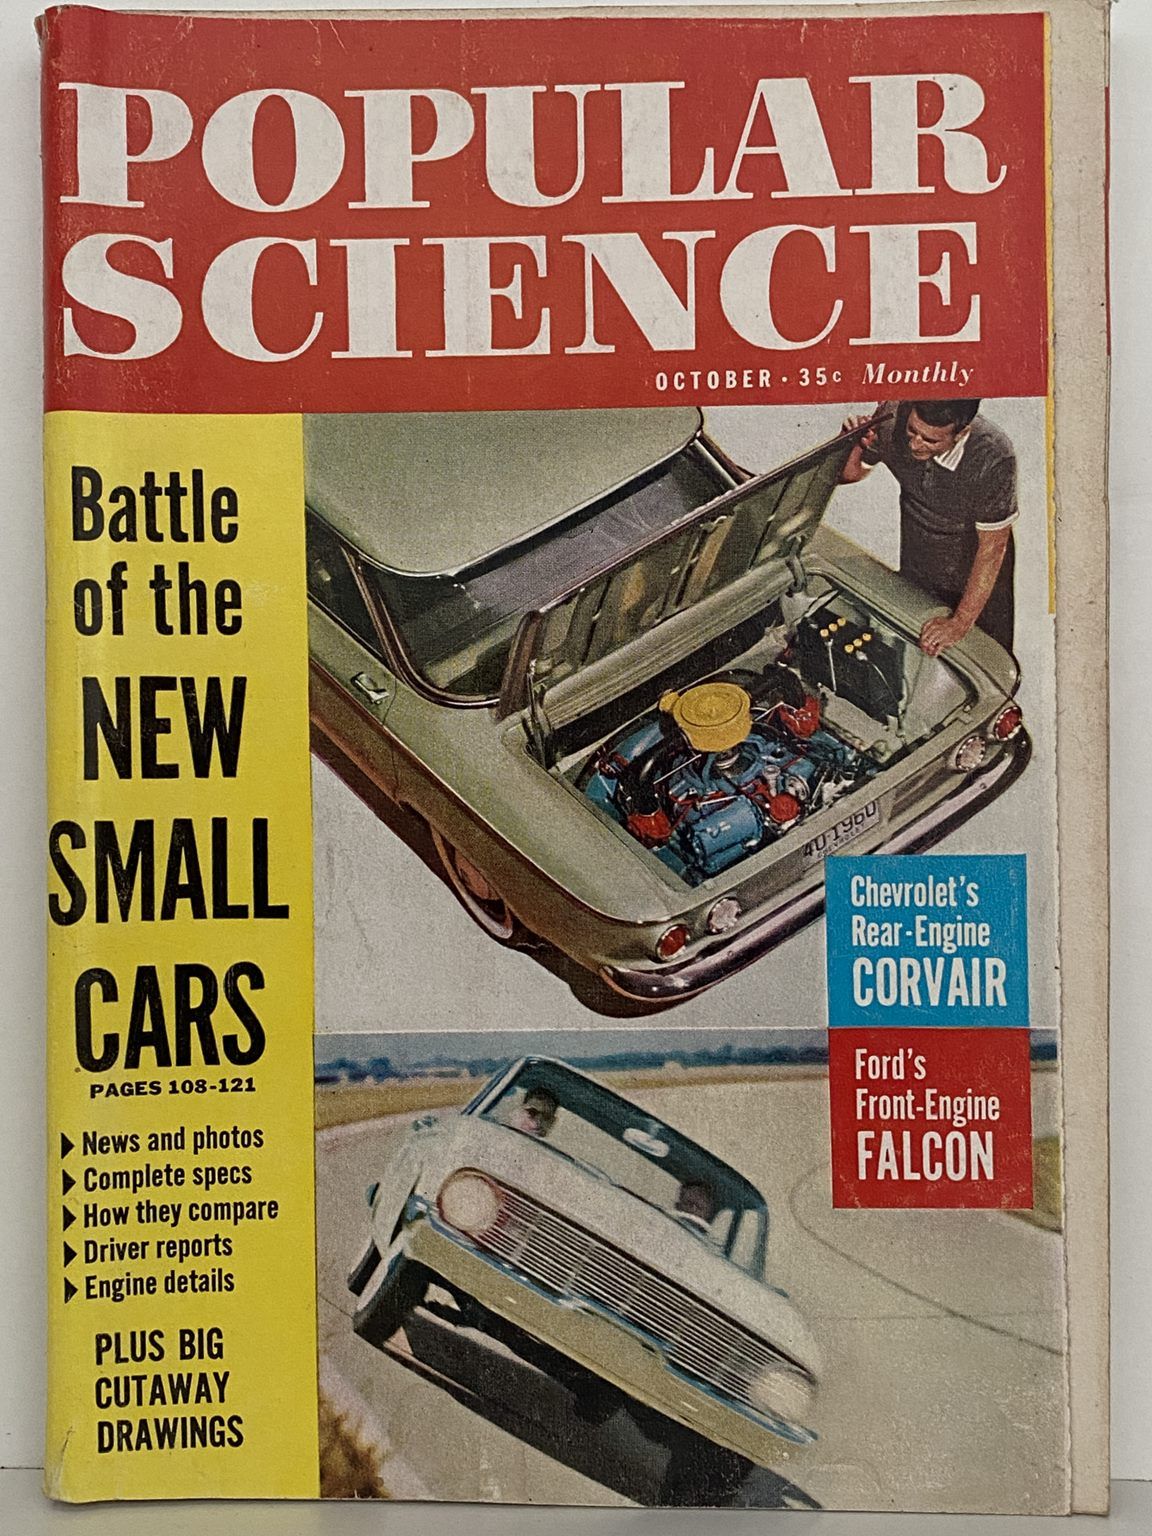 VINTAGE MAGAZINE: Popular Science, Vol. 175, No. 4 - October 1959